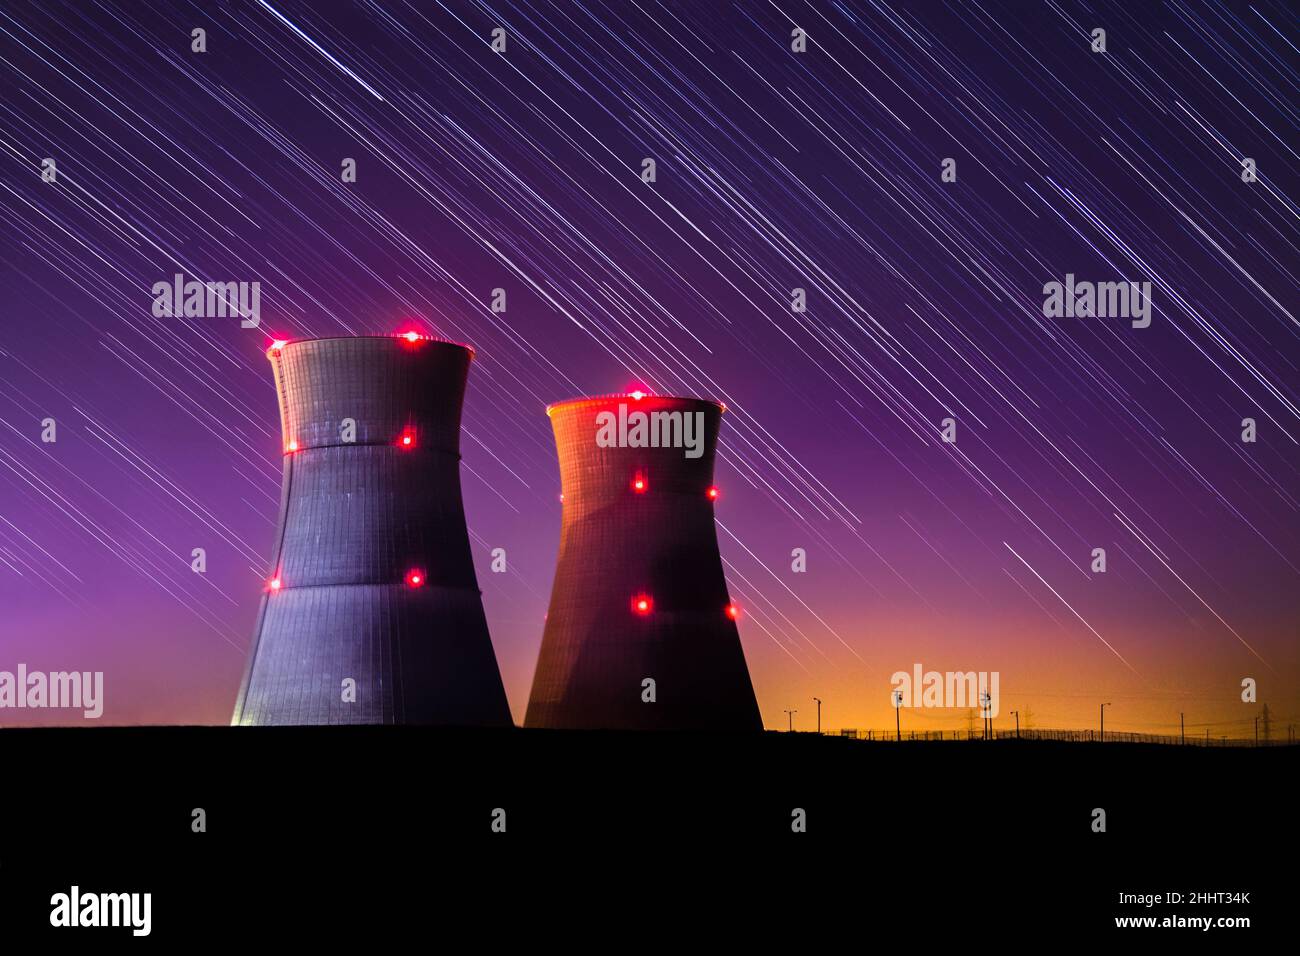 Une image astrophotographique d'une centrale nucléaire avec un coucher de soleil violet coloré et des pistes étoiles la nuit. Banque D'Images